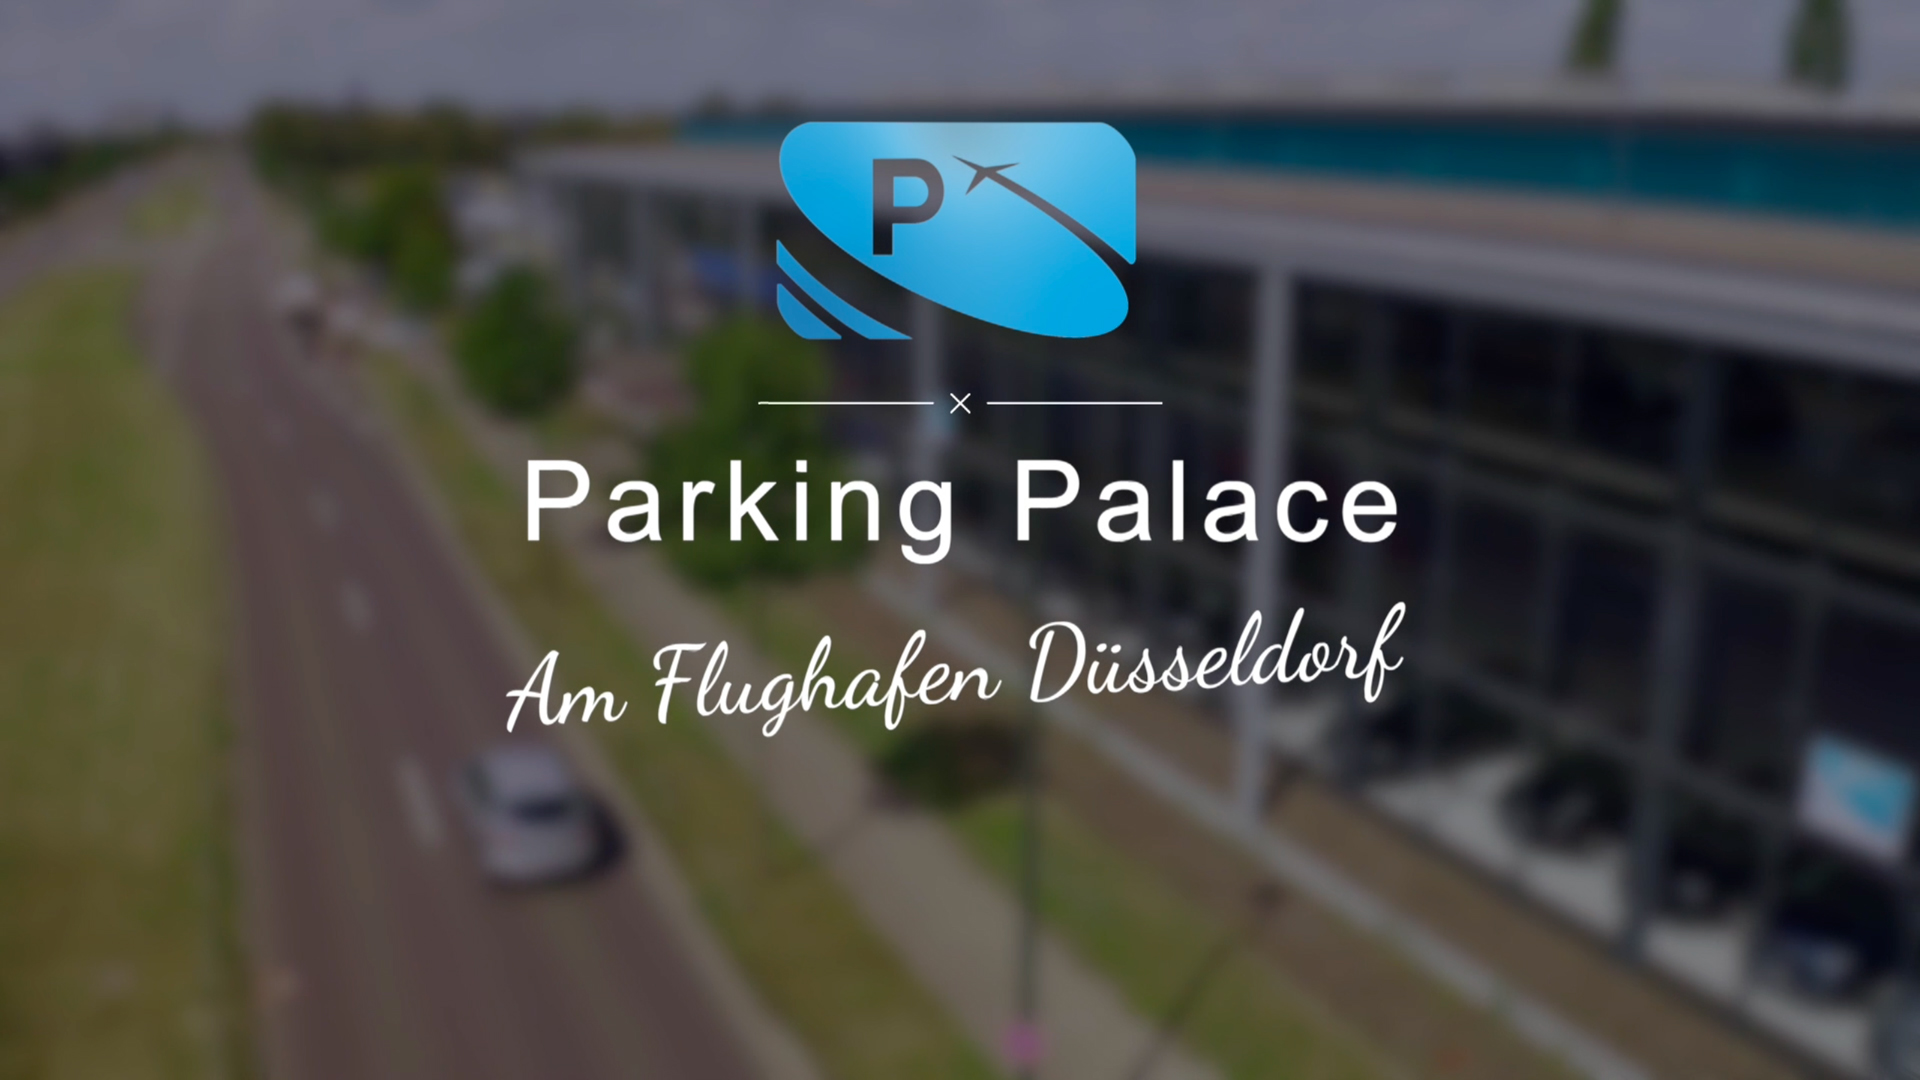 Parking Palace Imagefilm